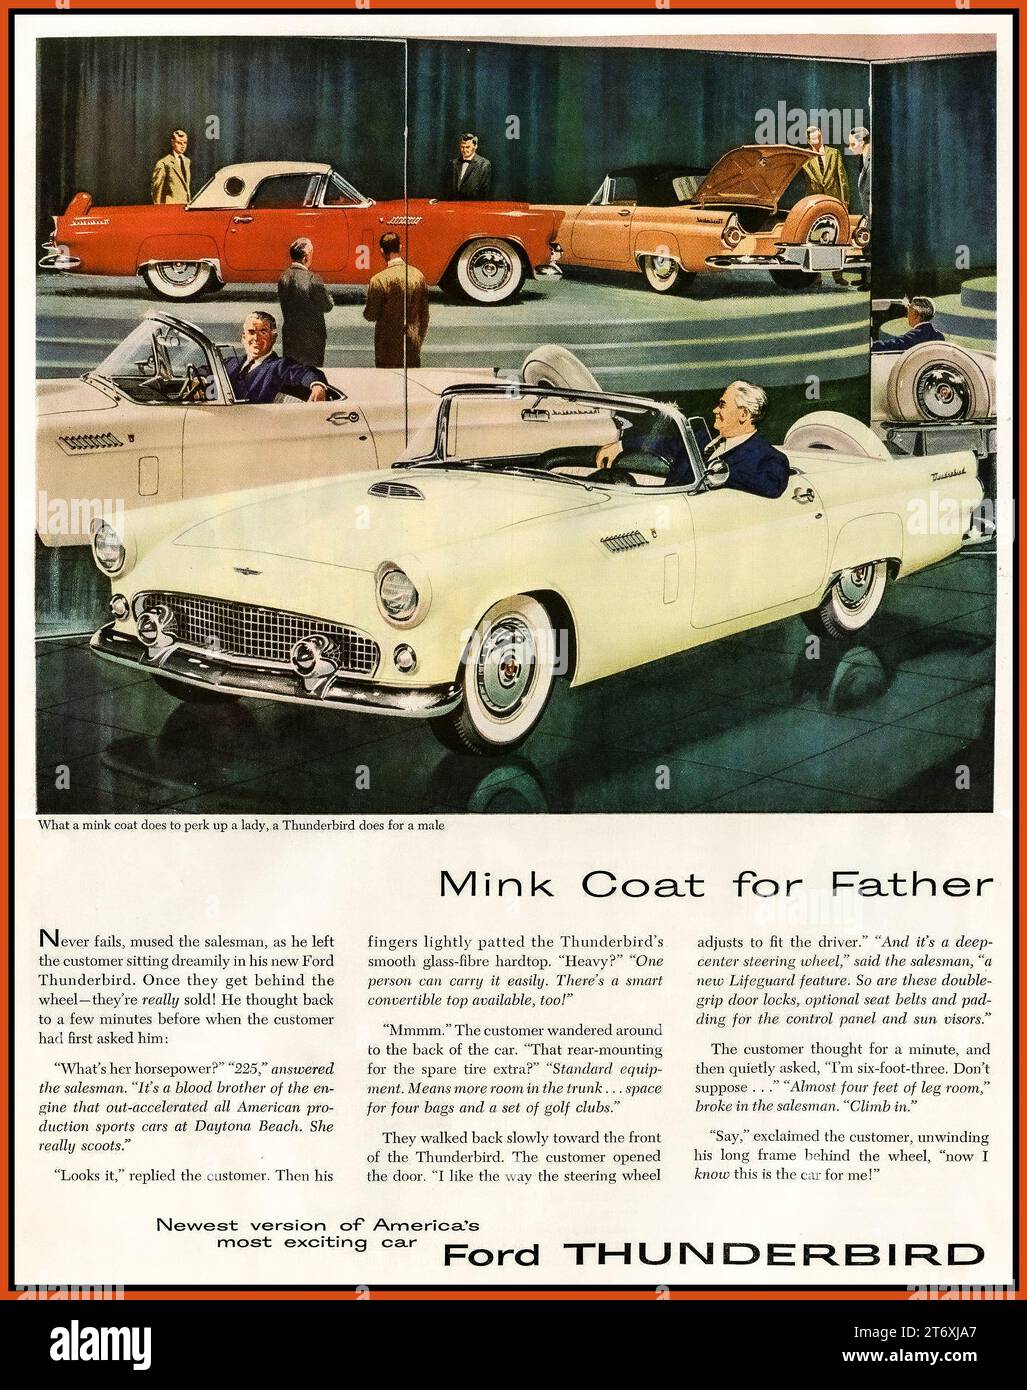 Ford Thunderbird 1950s publicité America USA 'MANTEAU DE VISON POUR PÈRE' 'ce qu'un manteau de vison fait pour une dame une Ford Thunderbird fait pour un homme' sexisme sexiste non pc publicité de presse de voiture Banque D'Images